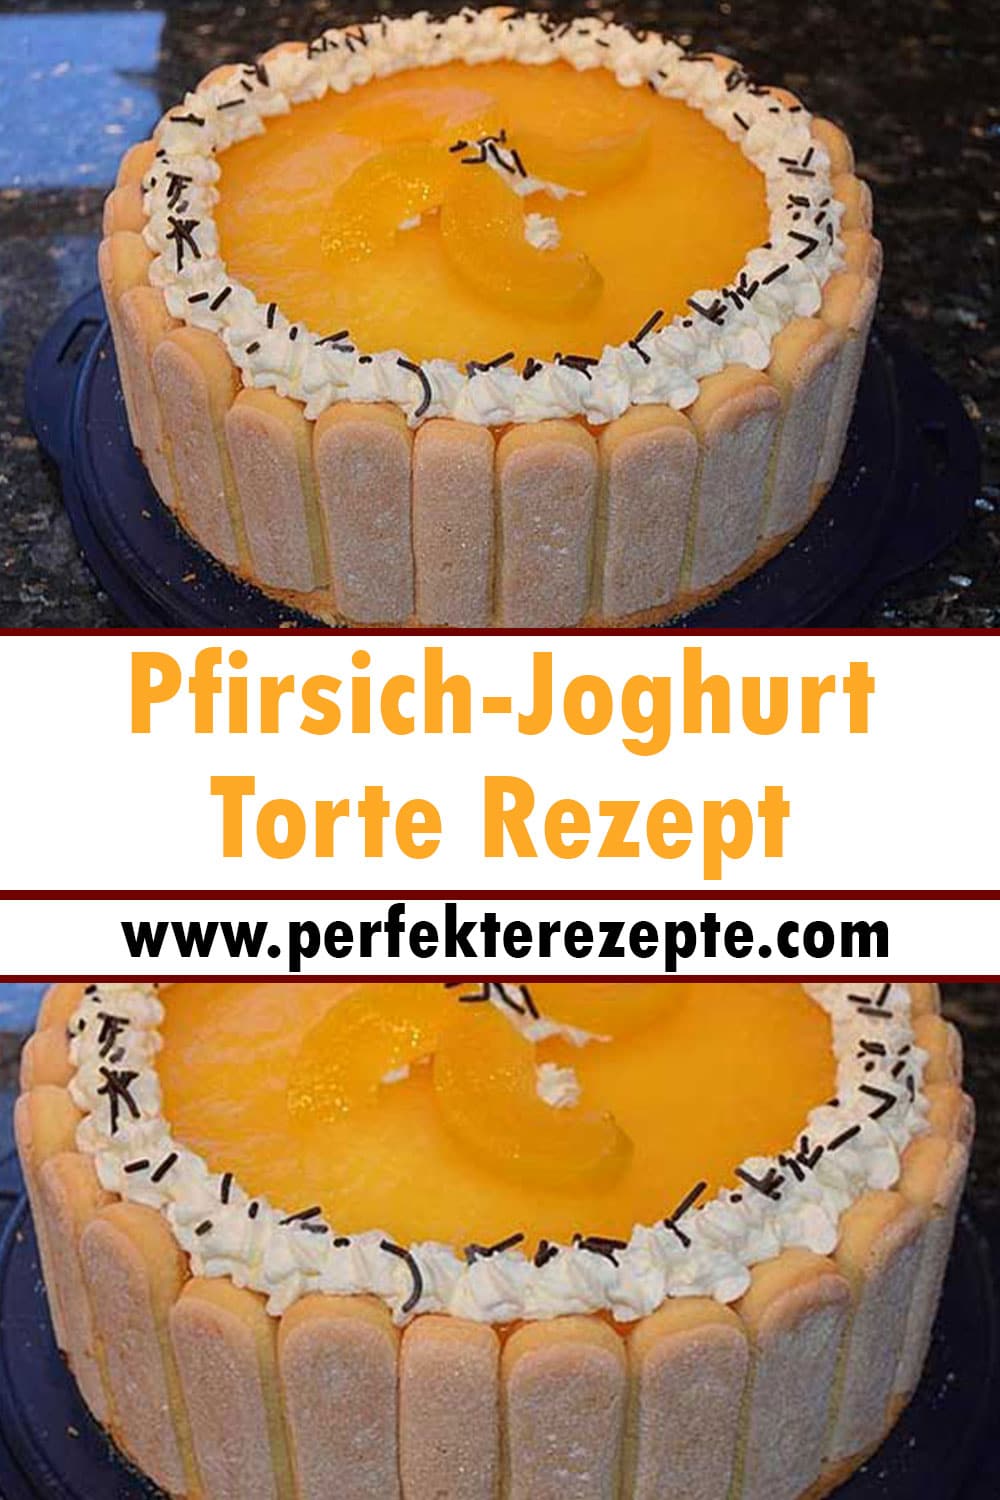 Pfirsich-Joghurt-Torte Rezept